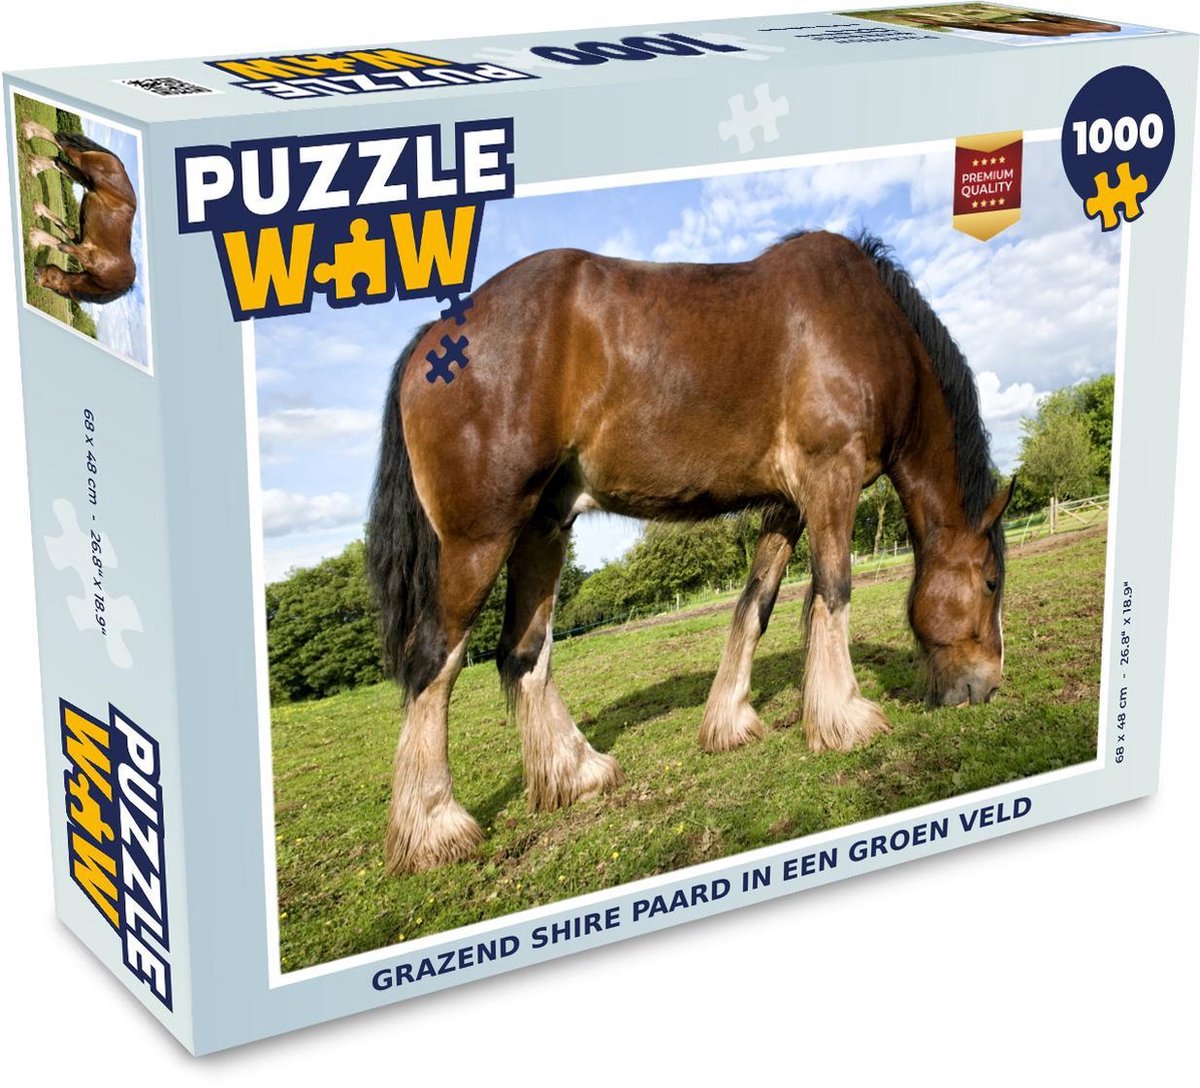 Afbeelding van product Puzzel 1000 stukjes volwassenen De shire 1000 stukjes - Grazend shire paard in een groen veld puzzel 1000 stukjes - PuzzleWow heeft +100000 puzzels